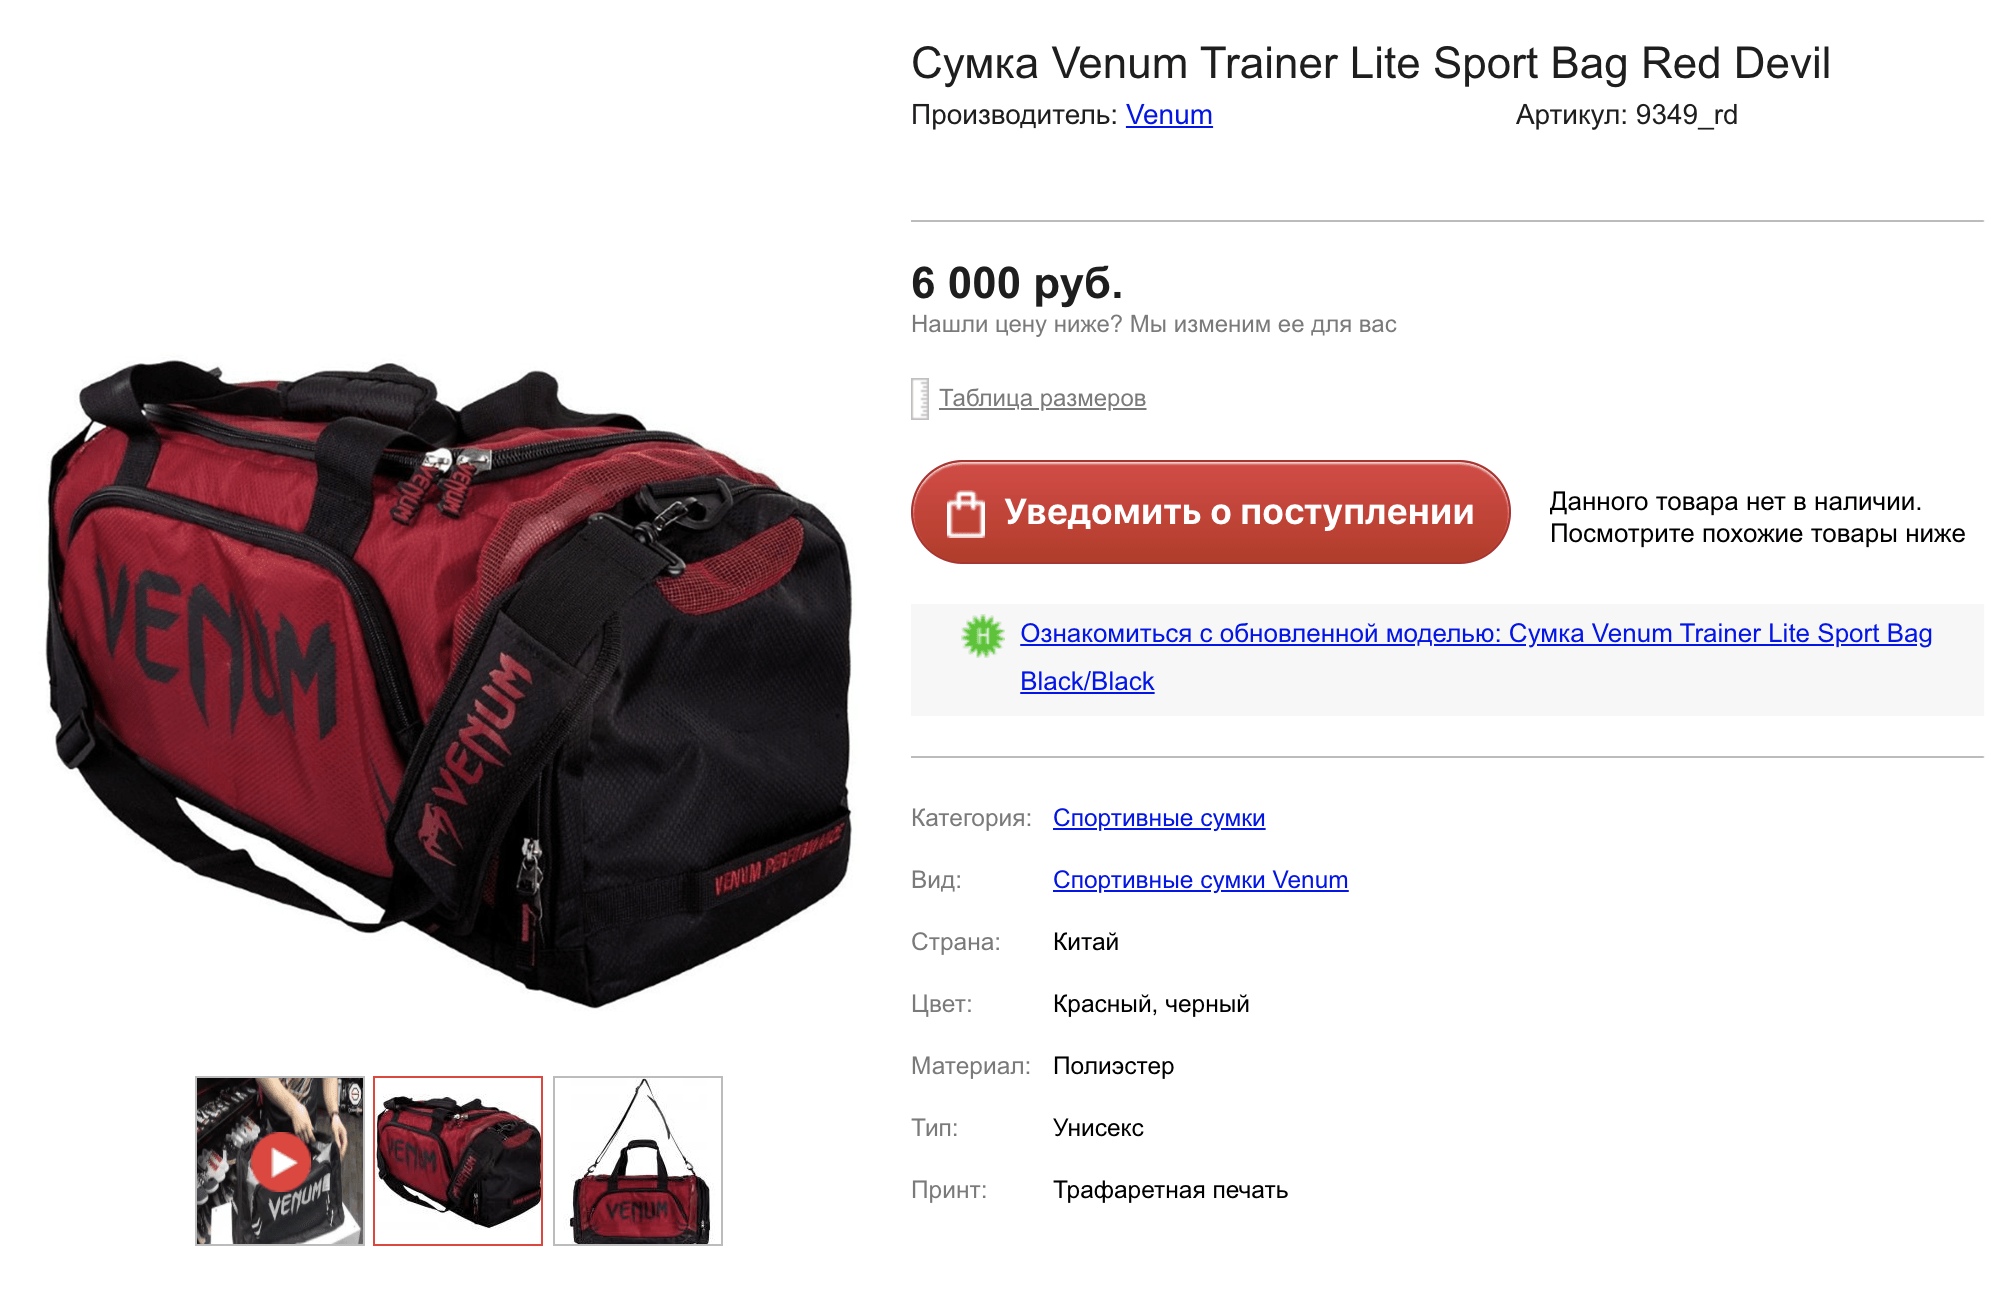 Нормальная сумка за 6000 ₽